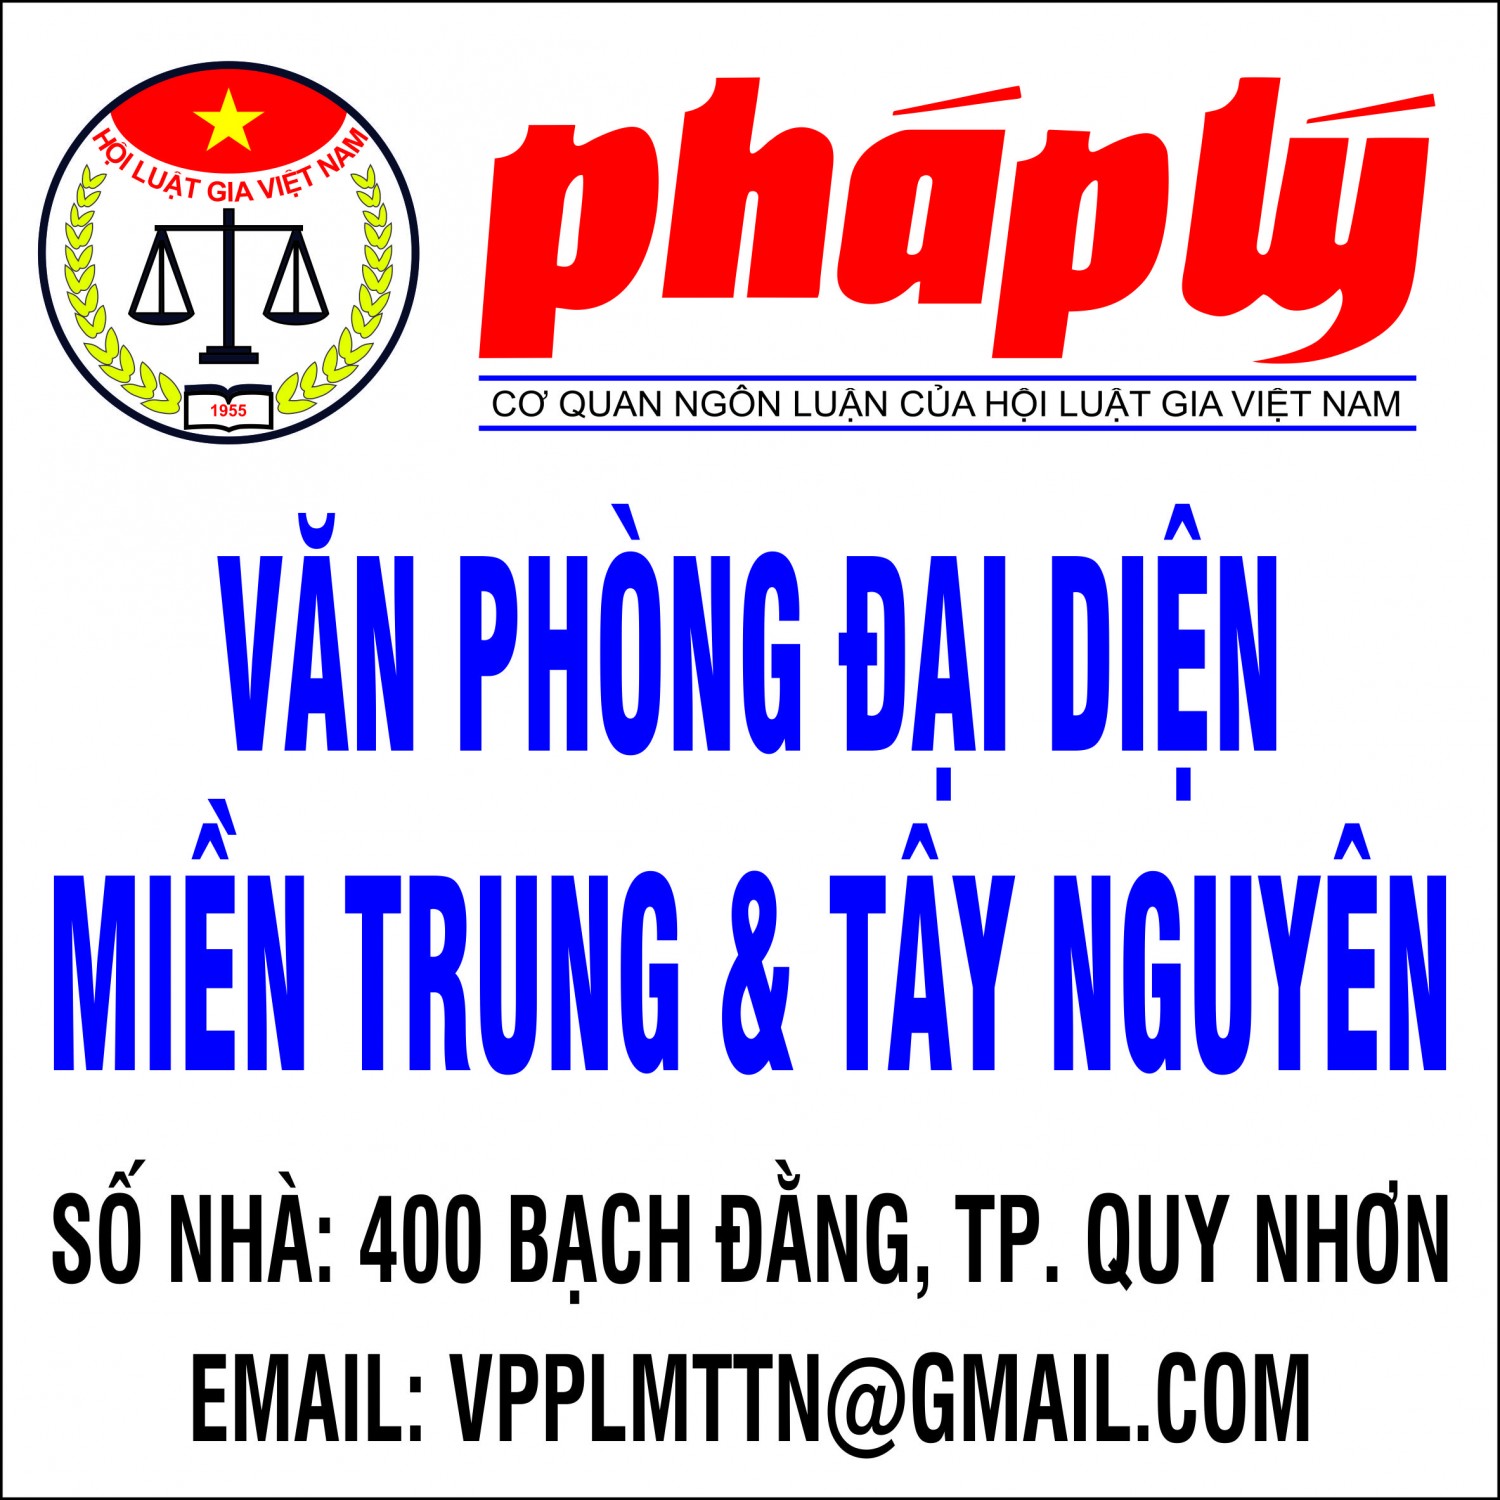 Trụ sở VP hiện nay: 40/2 Trần Lương, TP. Quy Nhơn